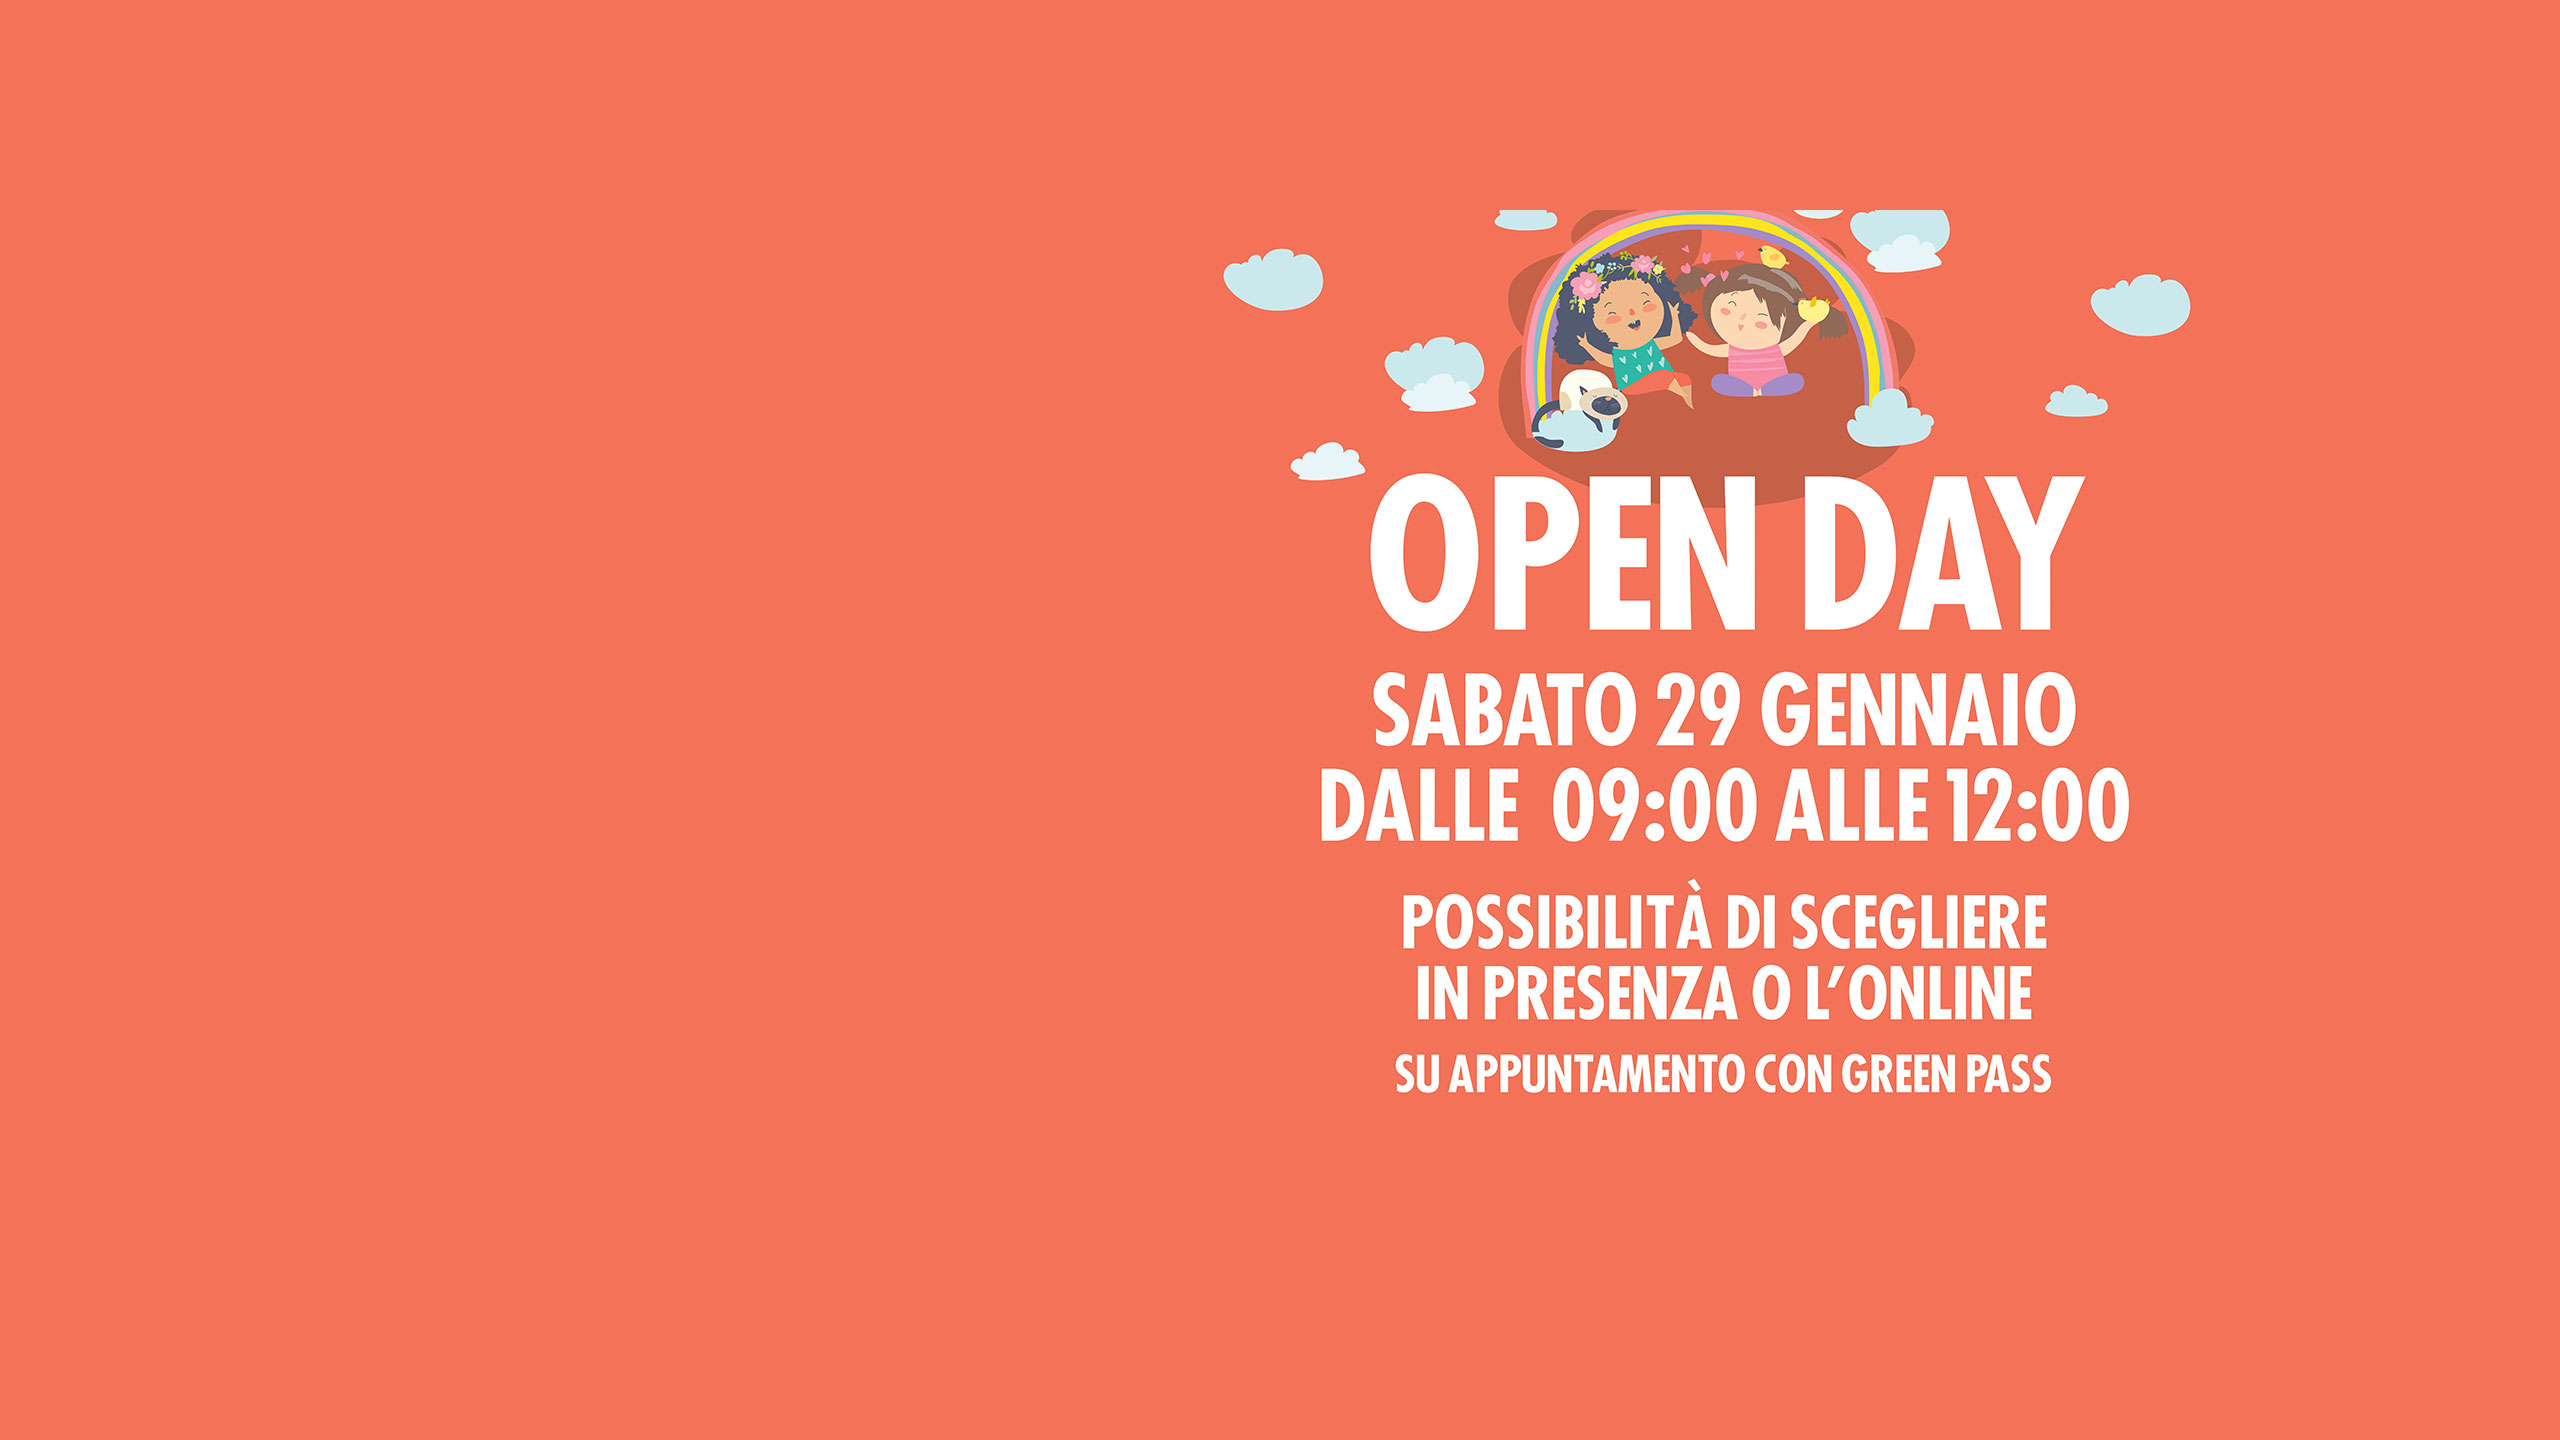 Openday - Slider home 29 gennaio 2022 - Scuola materna Morelli Rebusca